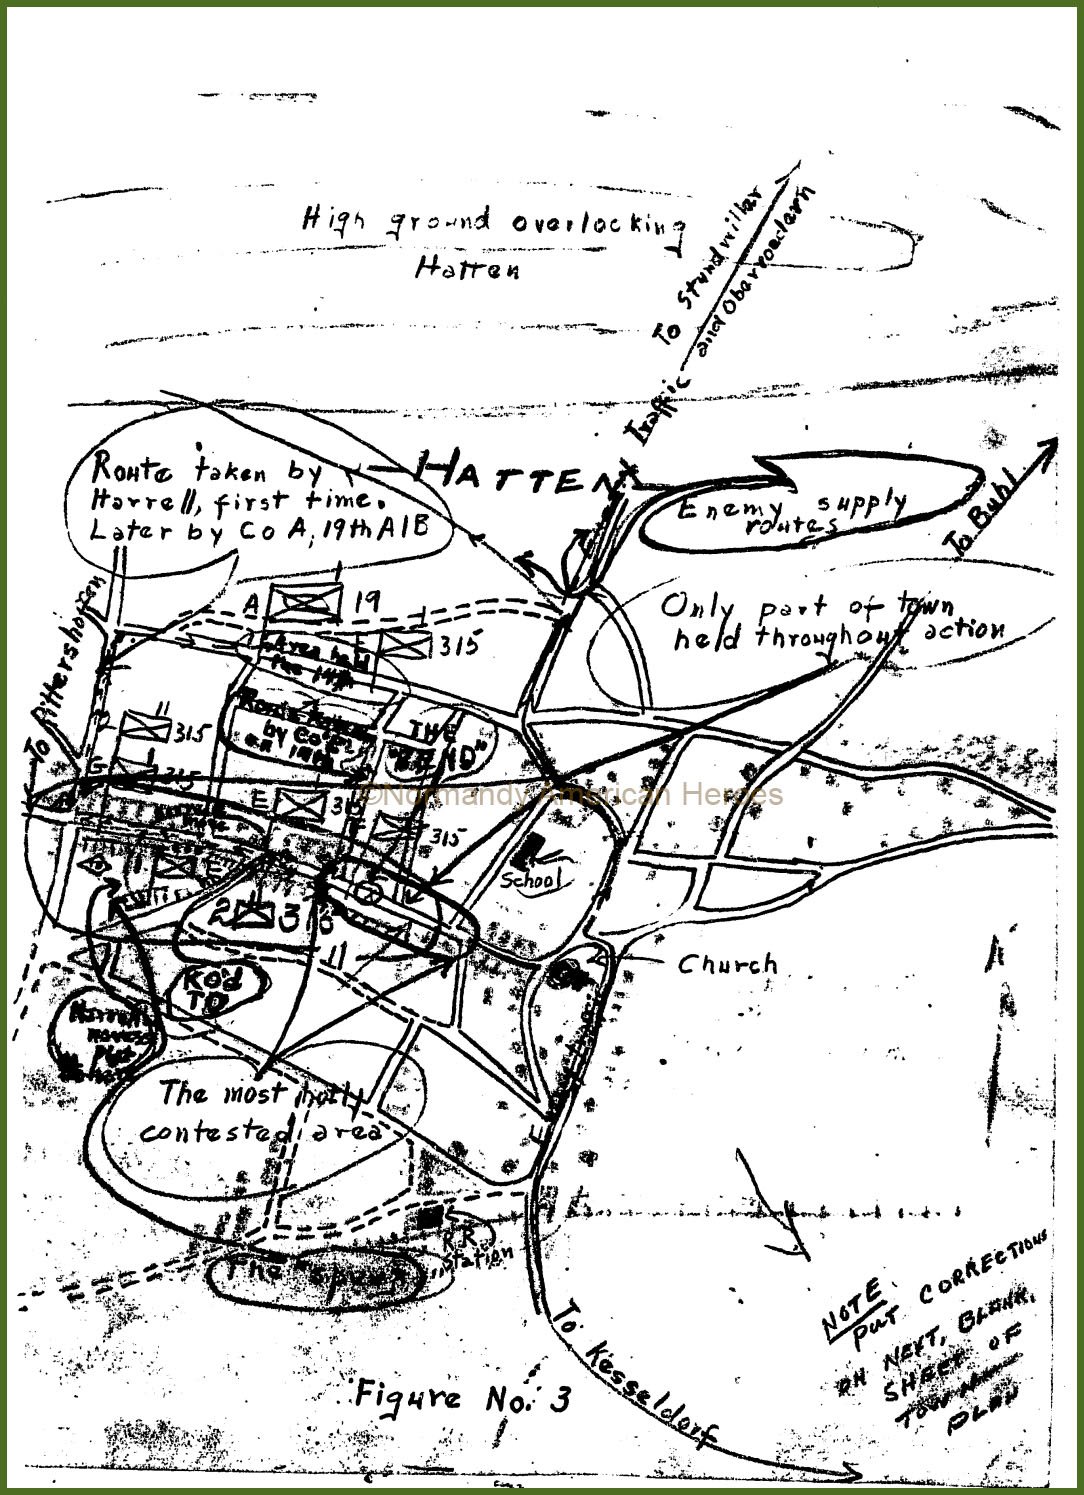 Hatten Map - Figure N°3